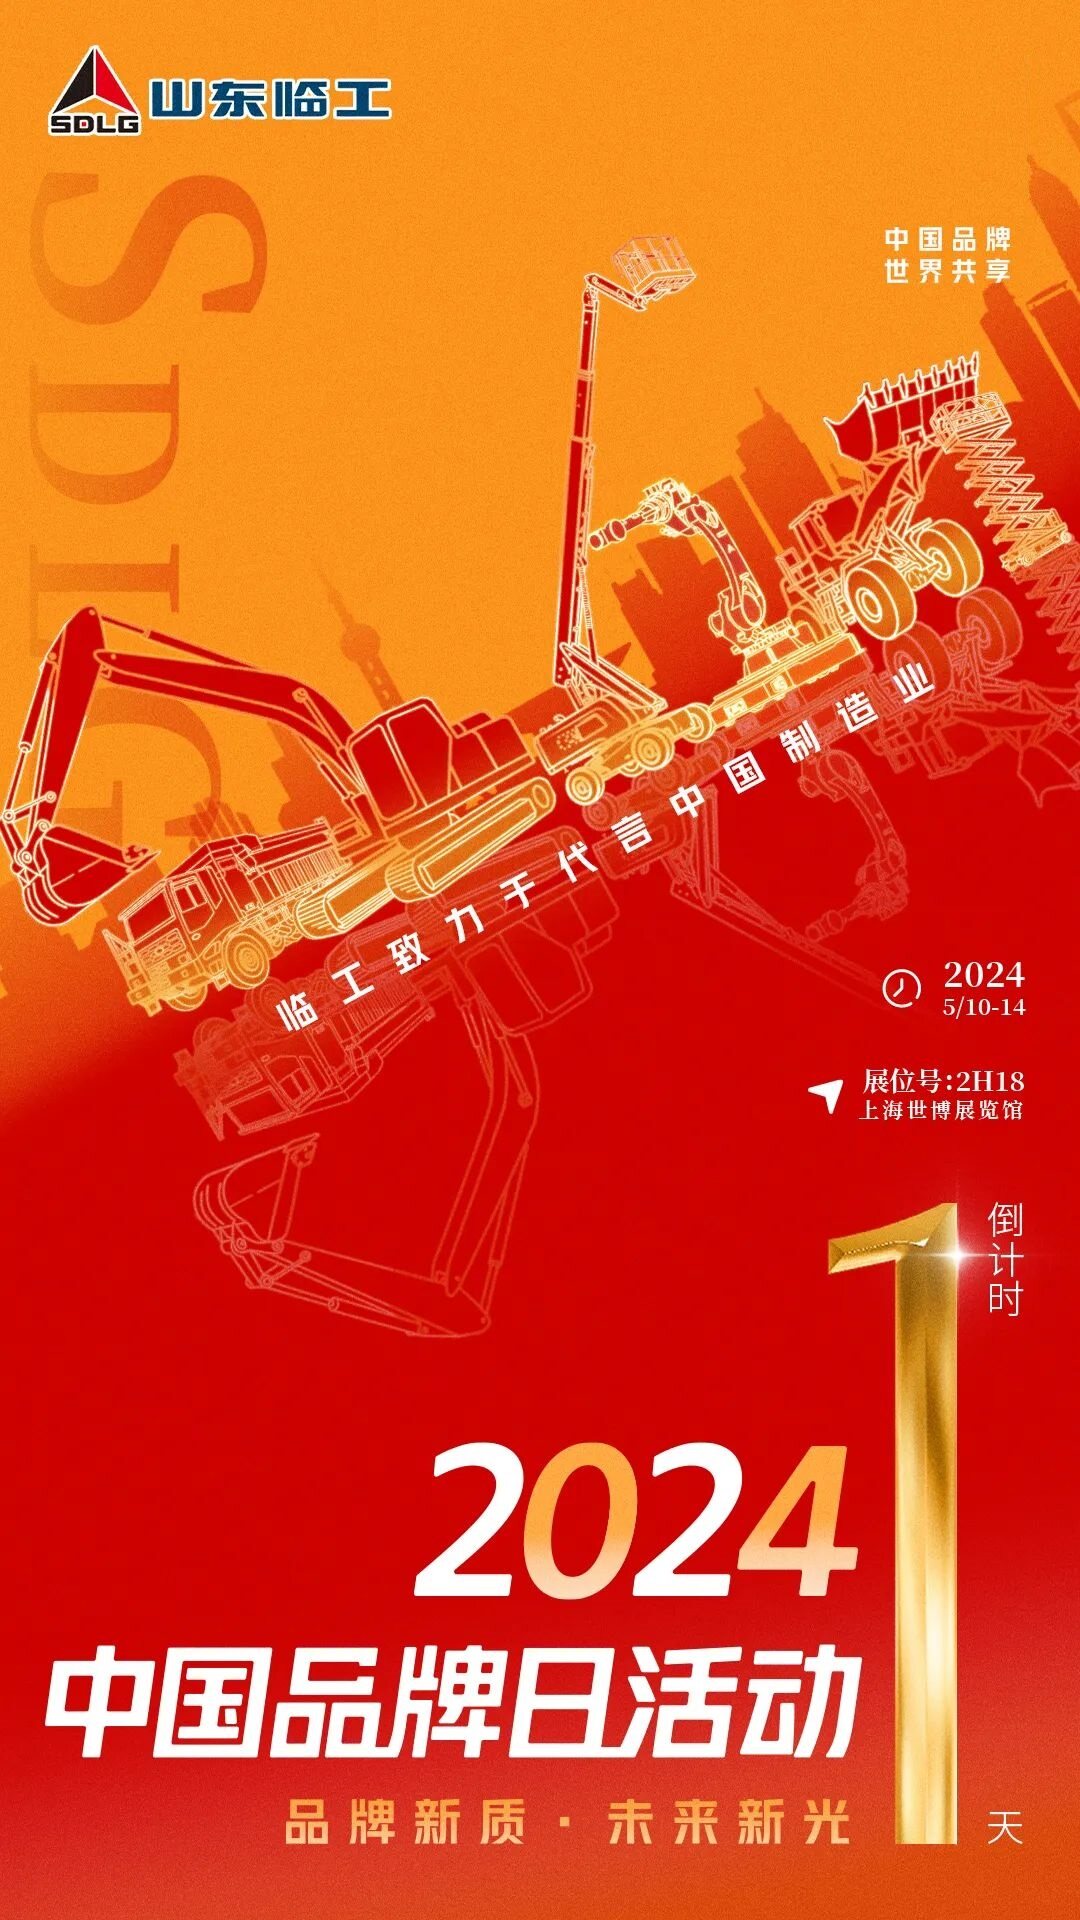 2024中国品牌日倒计时1天，山东临工期待与您在【2H18】展位不见不散！